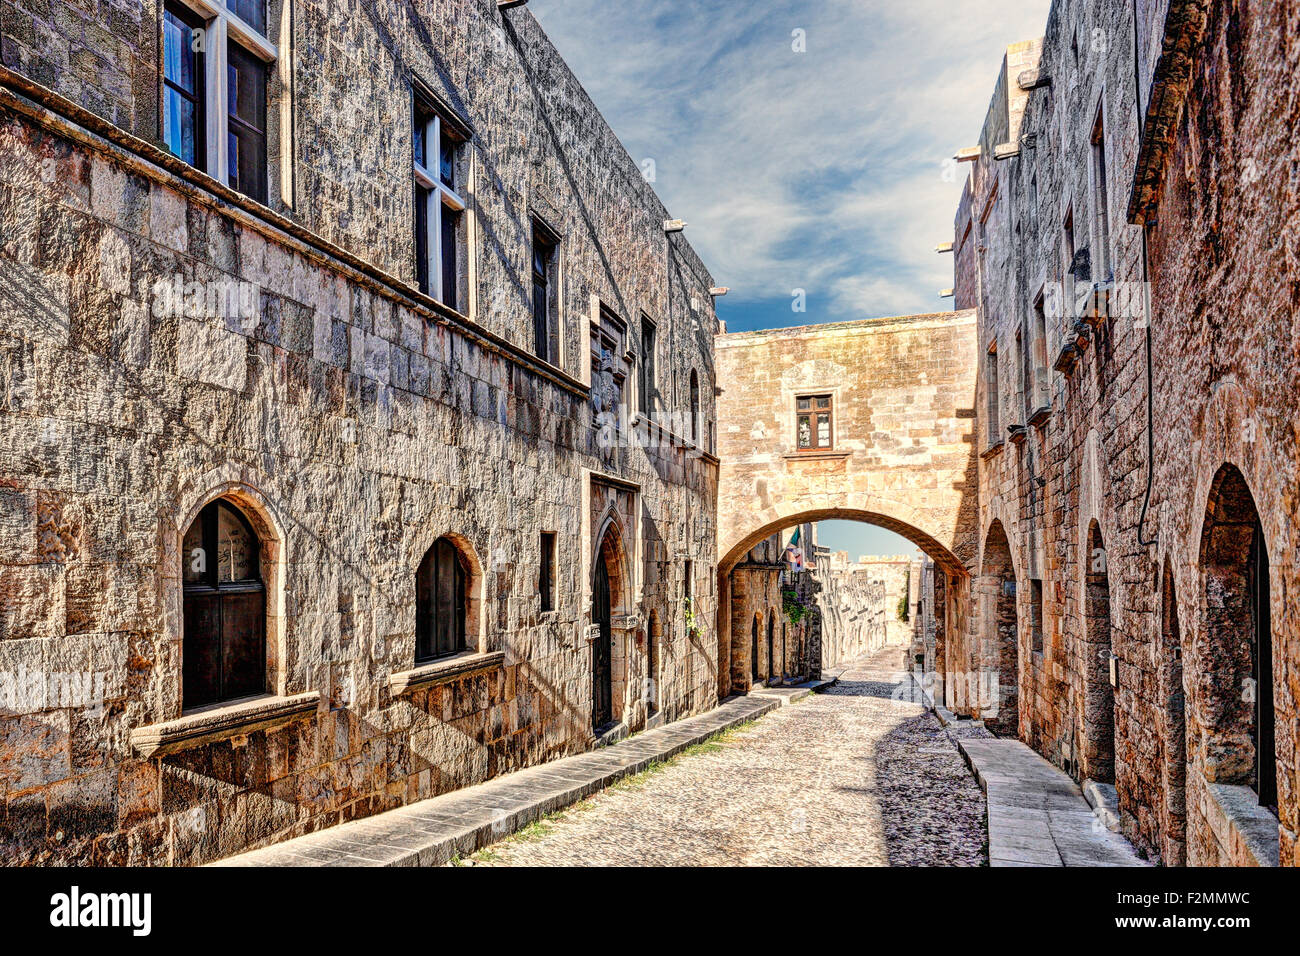 Die Straße der Ritter in Rhodos Griechenland ist eines der am besten erhaltenen und eindrucksvollen mittelalterlichen Bauwerke der Welt. Stockfoto